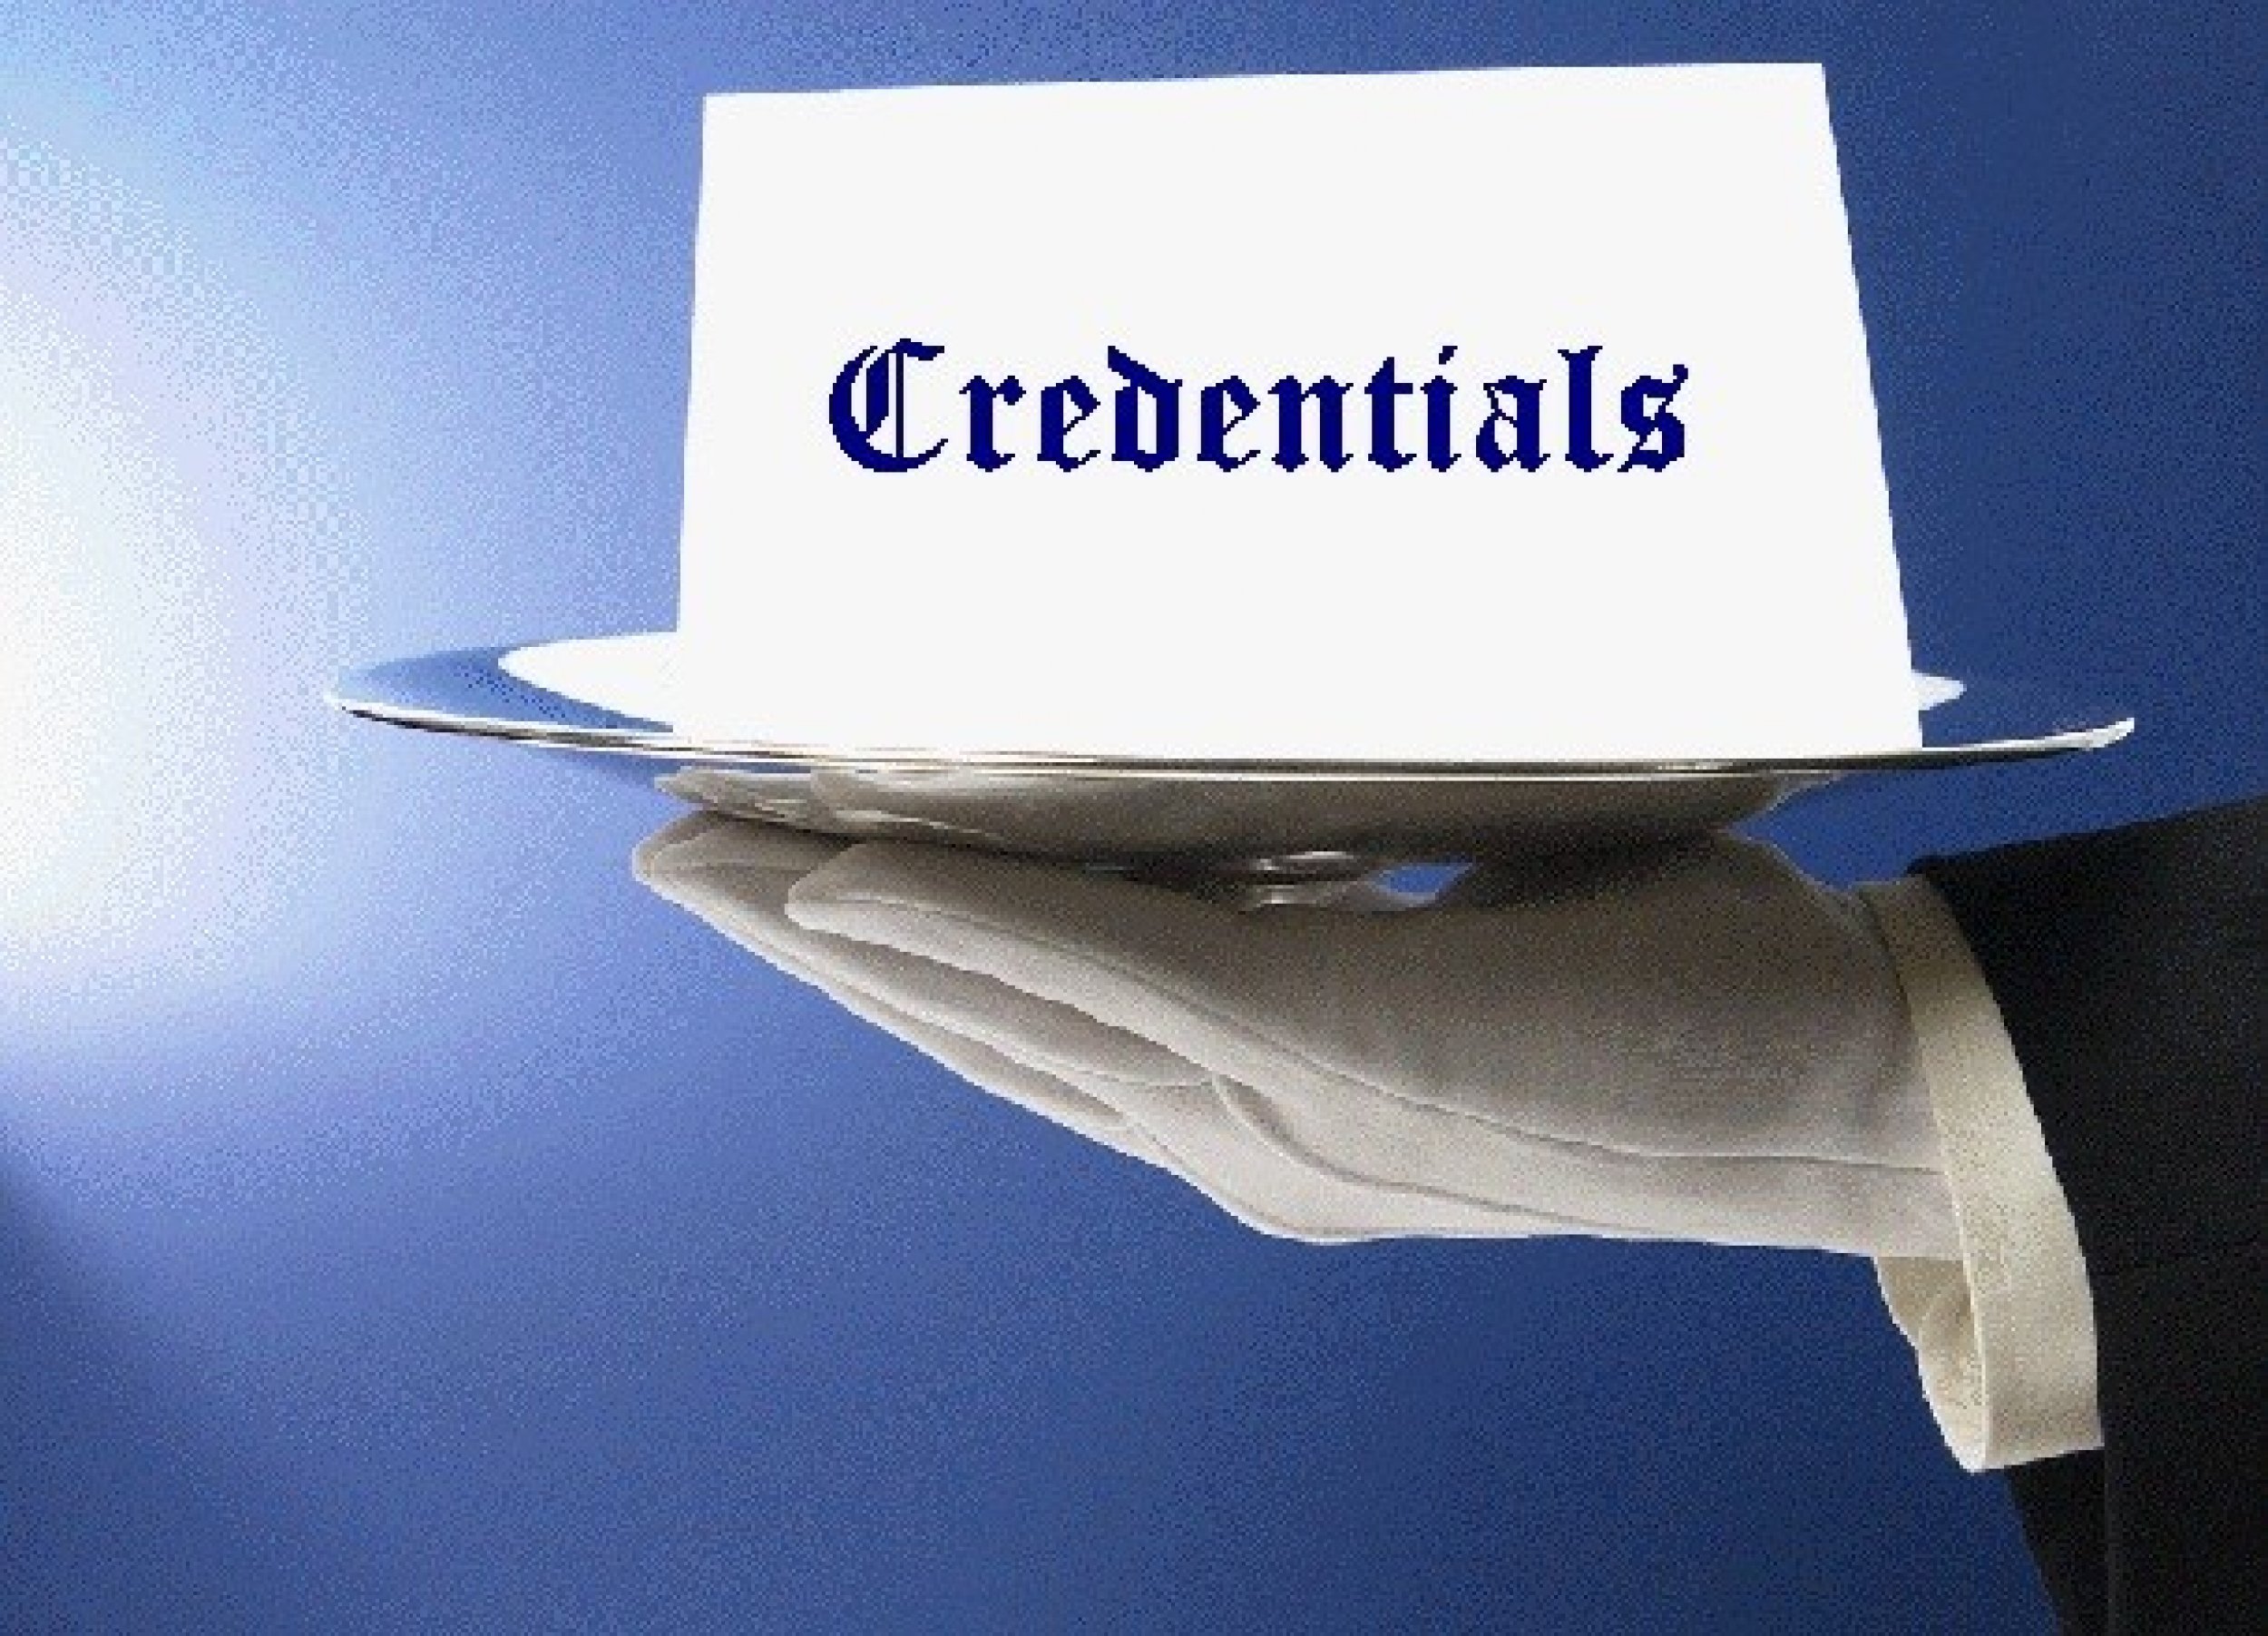 2. Credentials 12 percent